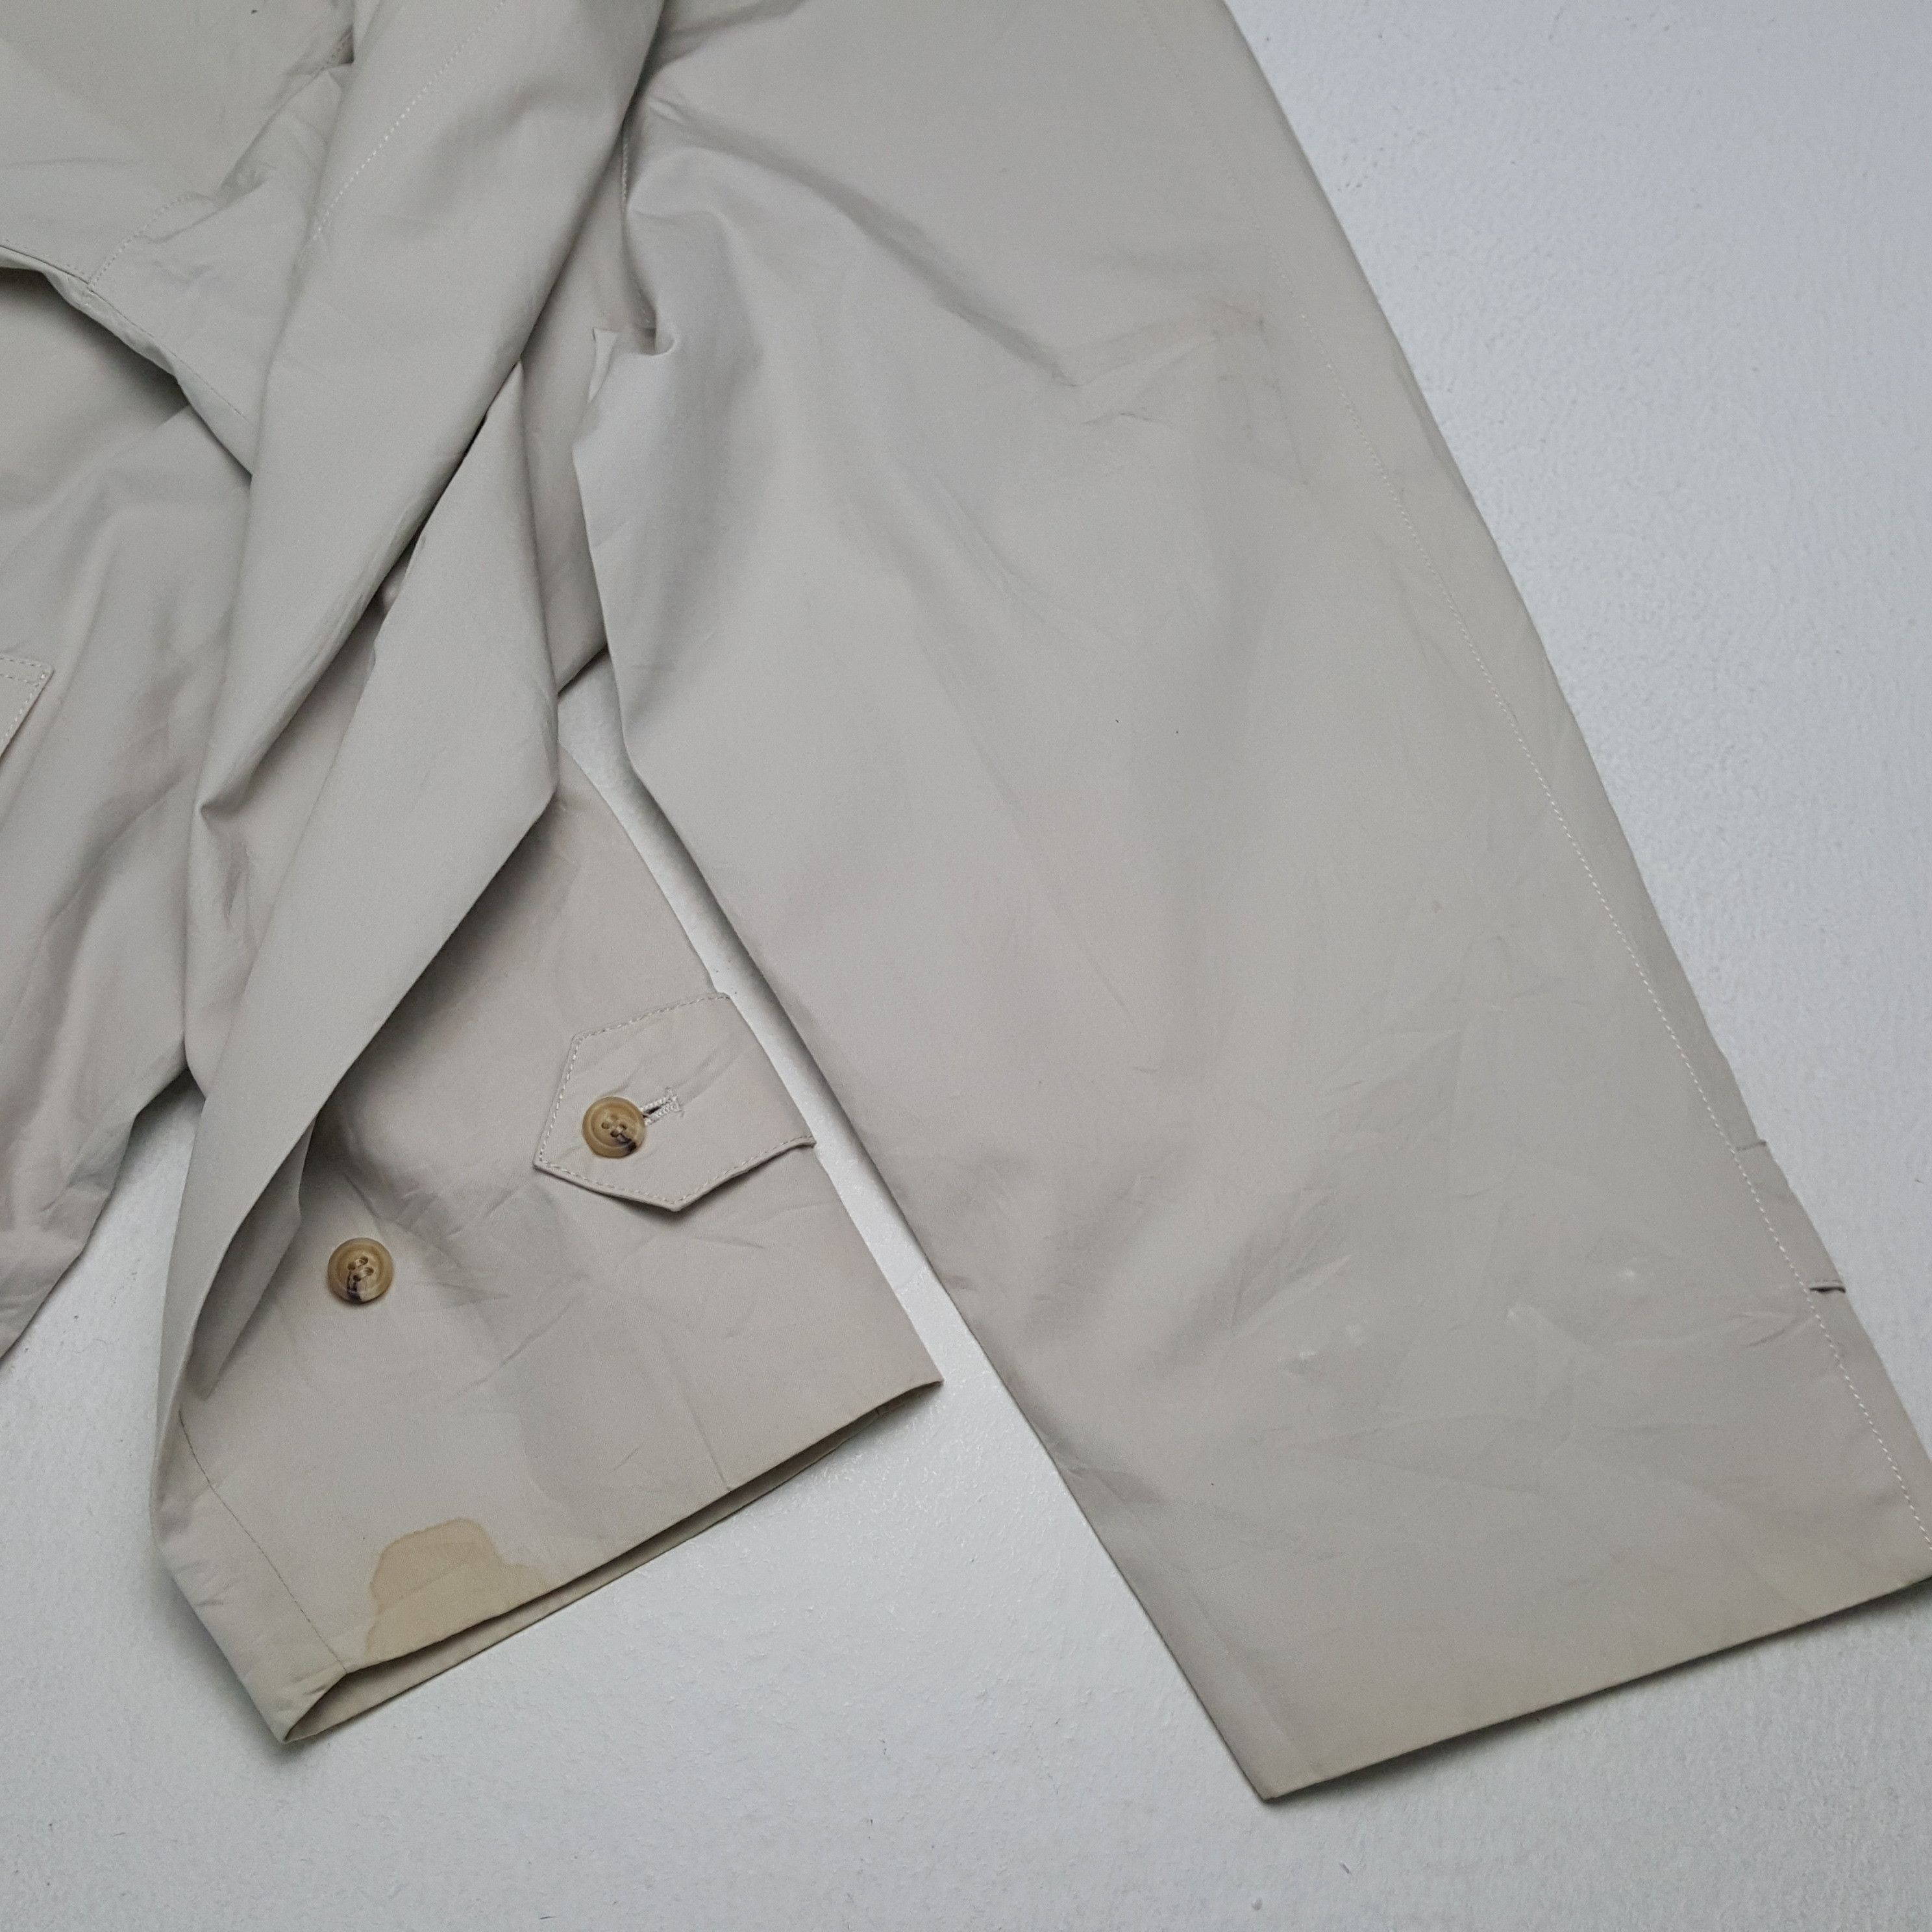 Vintage BARACUTA British Style Long Vintage Jacket Size US XL / EU 56 / 4 - 7 Thumbnail